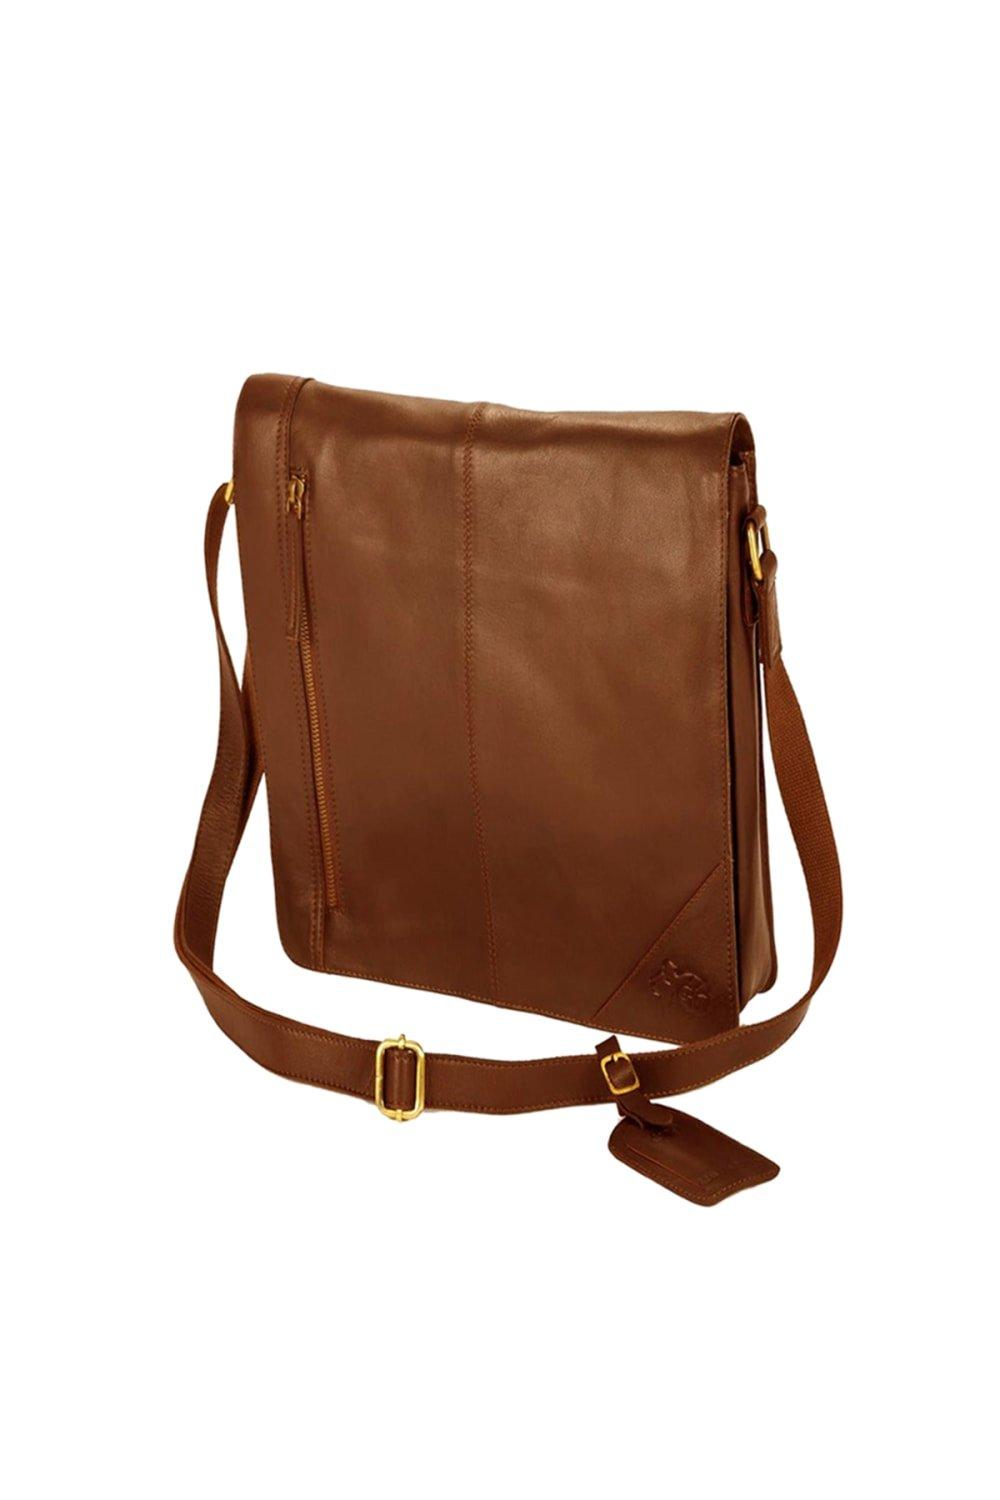 сумка jungle story сумка холщовая с внутренним и внешними карманами Узкая сумка-мессенджер Eastern Counties Leather, коричневый